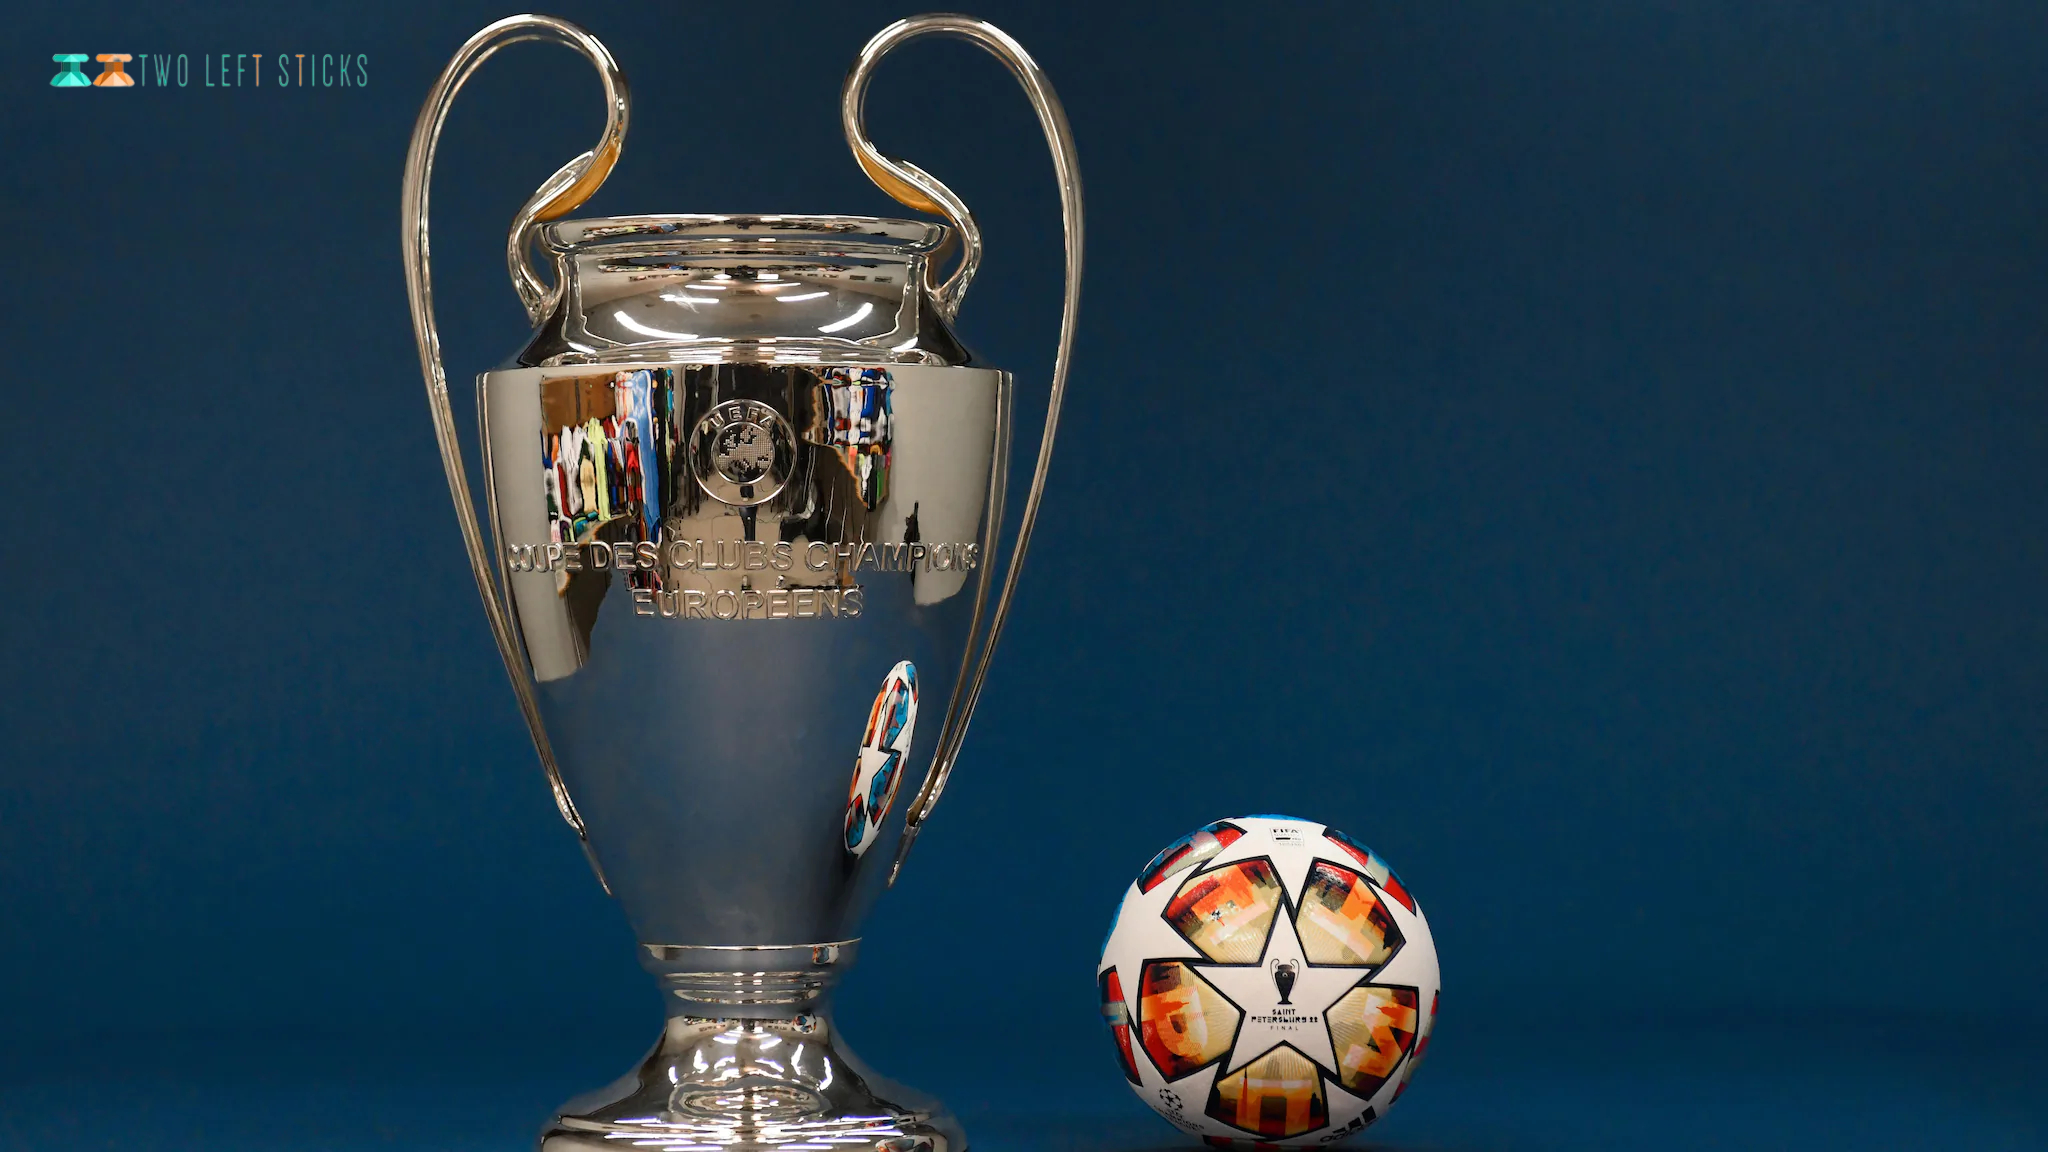 UEFA Champion League